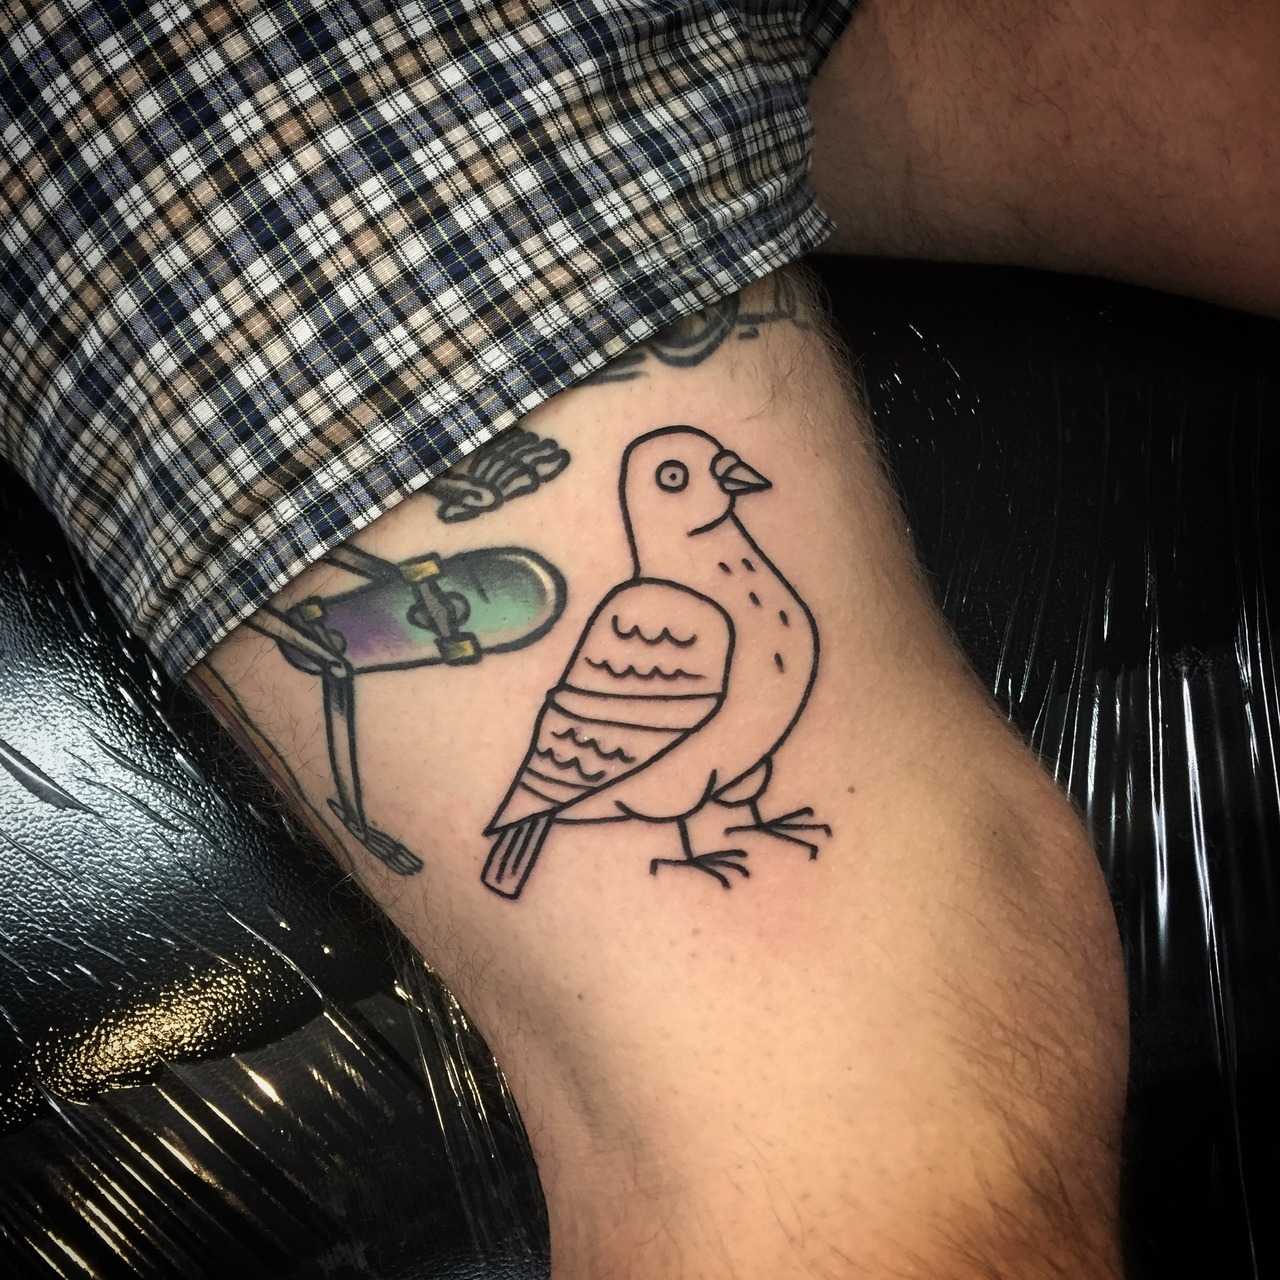 Little chillin pigeon on the forearm 🐦 @southburton on insta :  r/sticknpokes